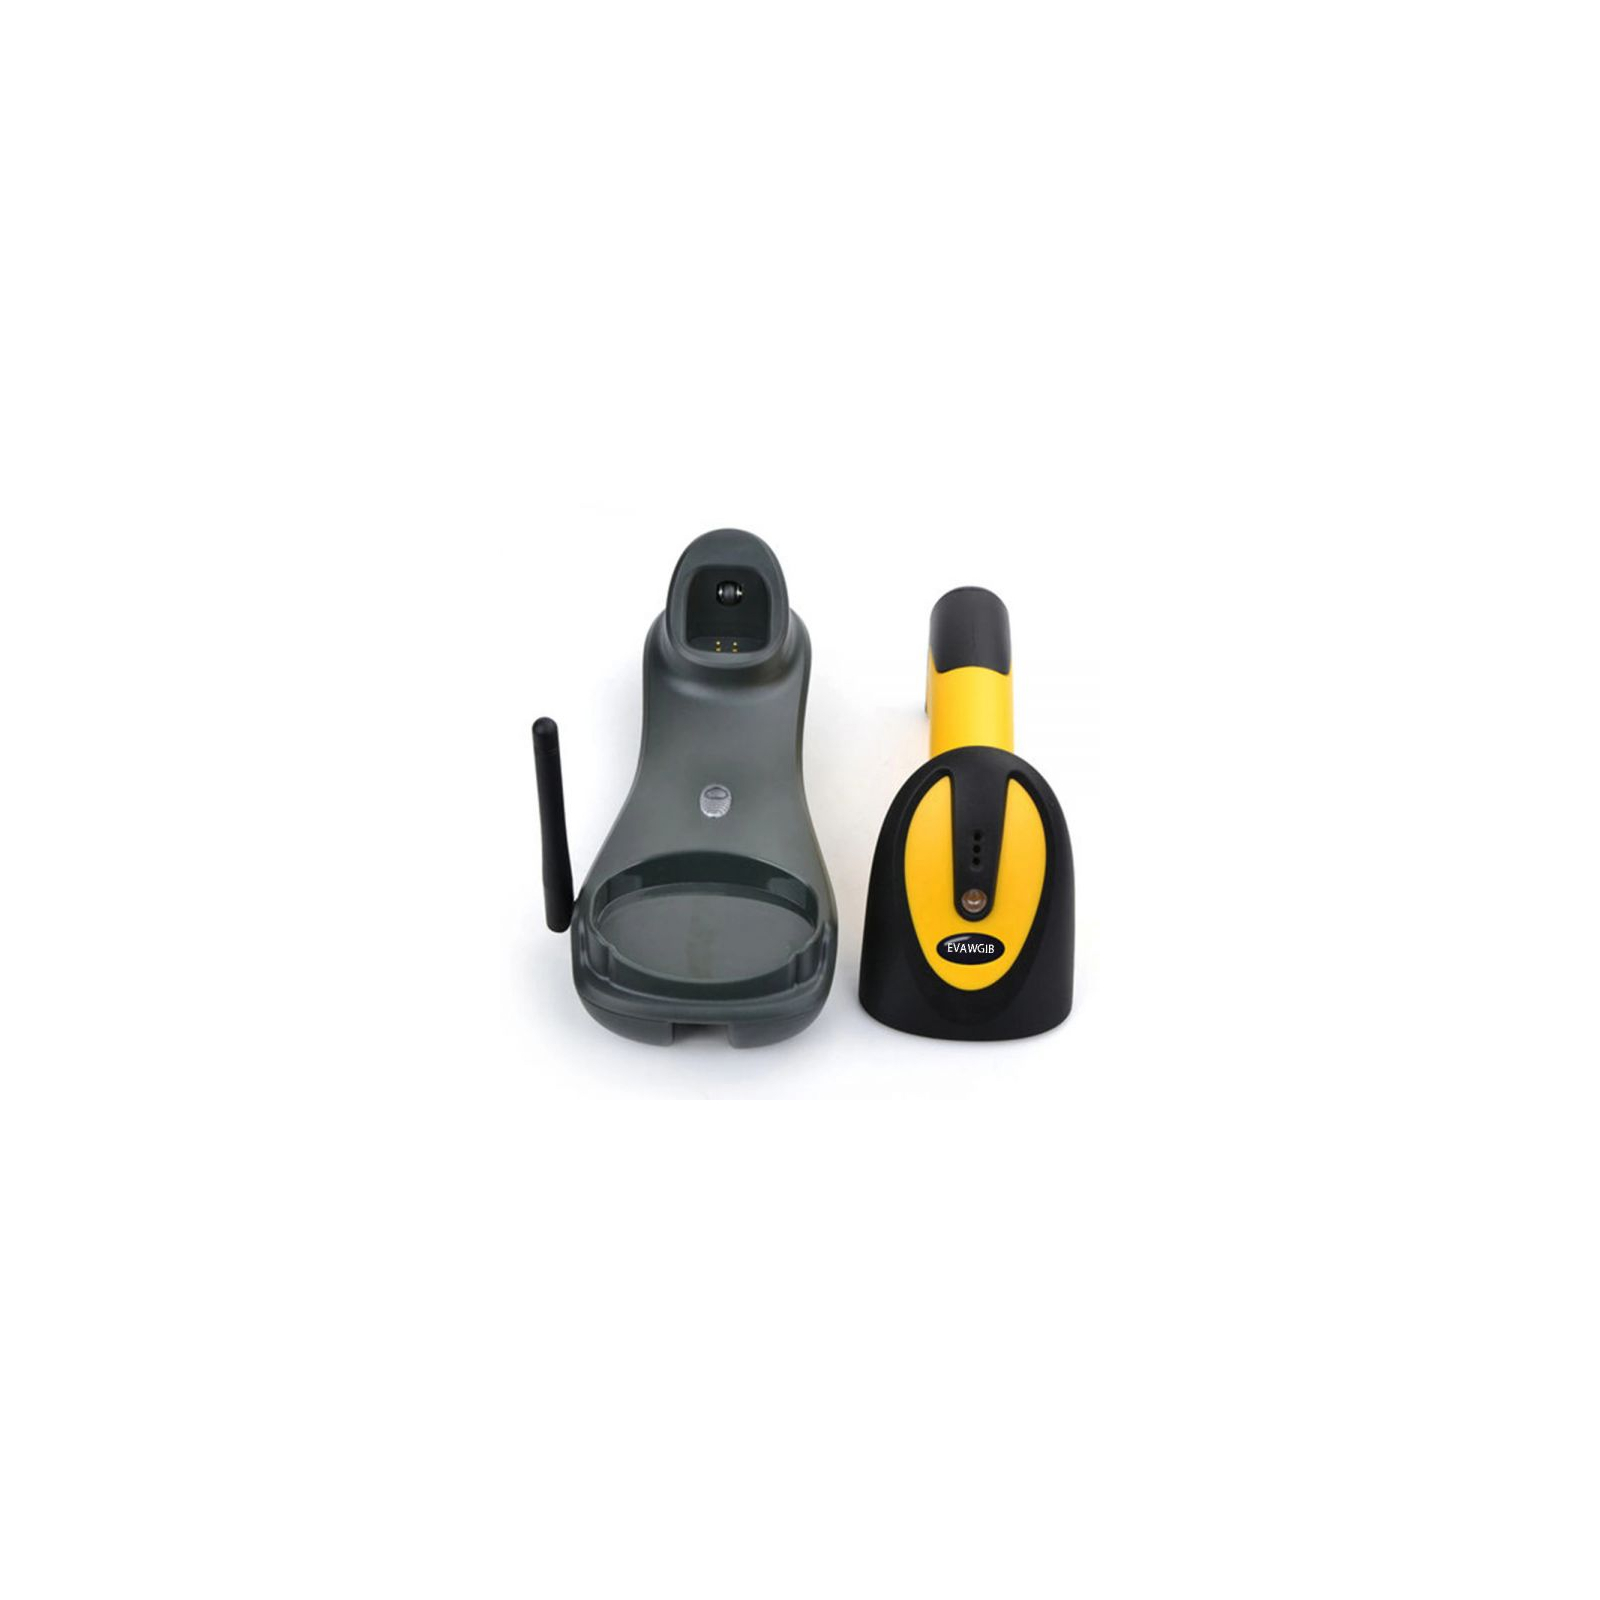 Сканер штрих-коду UKRMARK EV-W2503 2D, 433MHz, USB, IP64, stand, black/yellow (00769) зображення 3